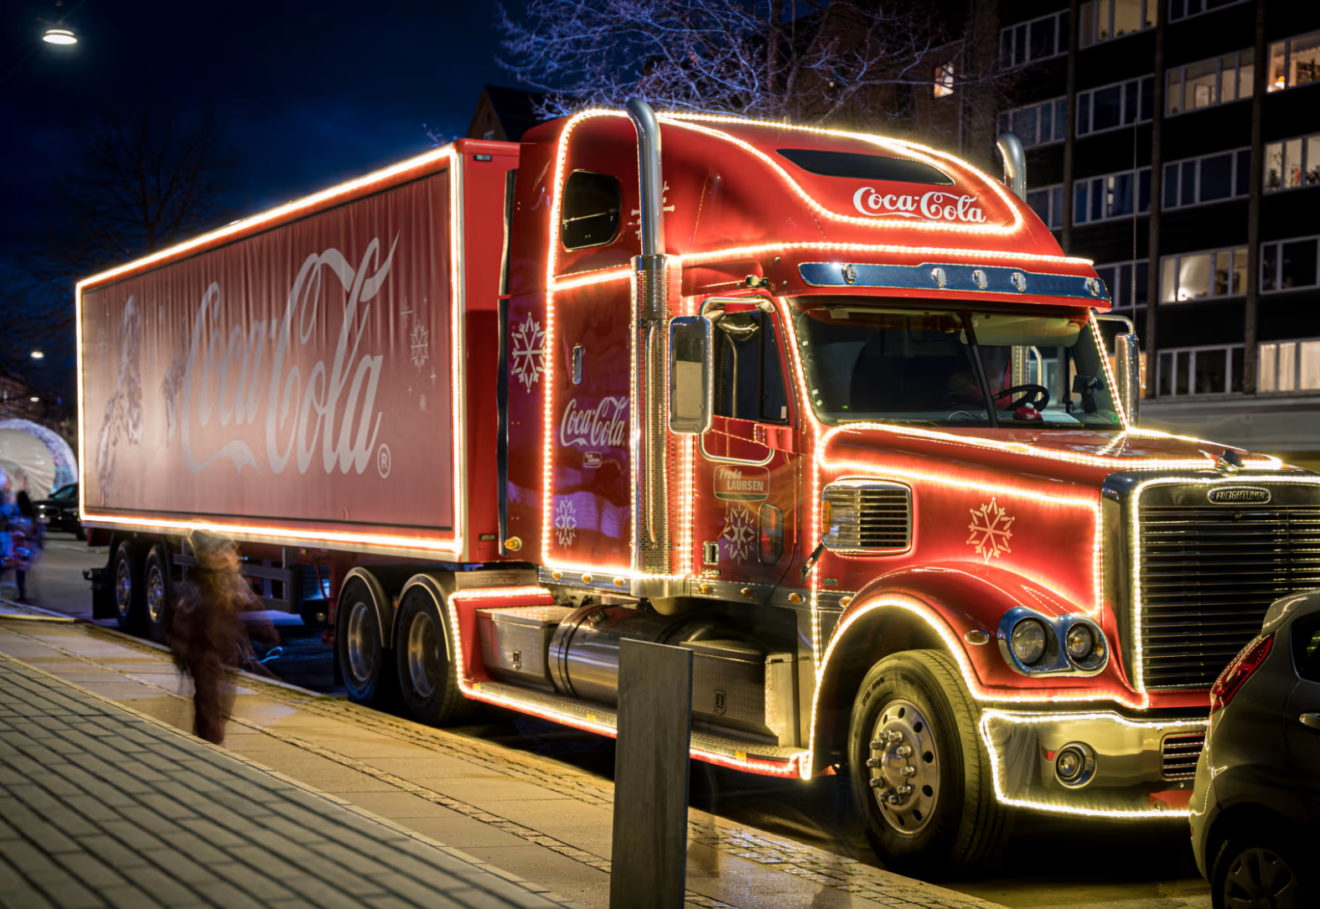 Find din indre julemand frem når julelastbilen kommer til Kalundborg